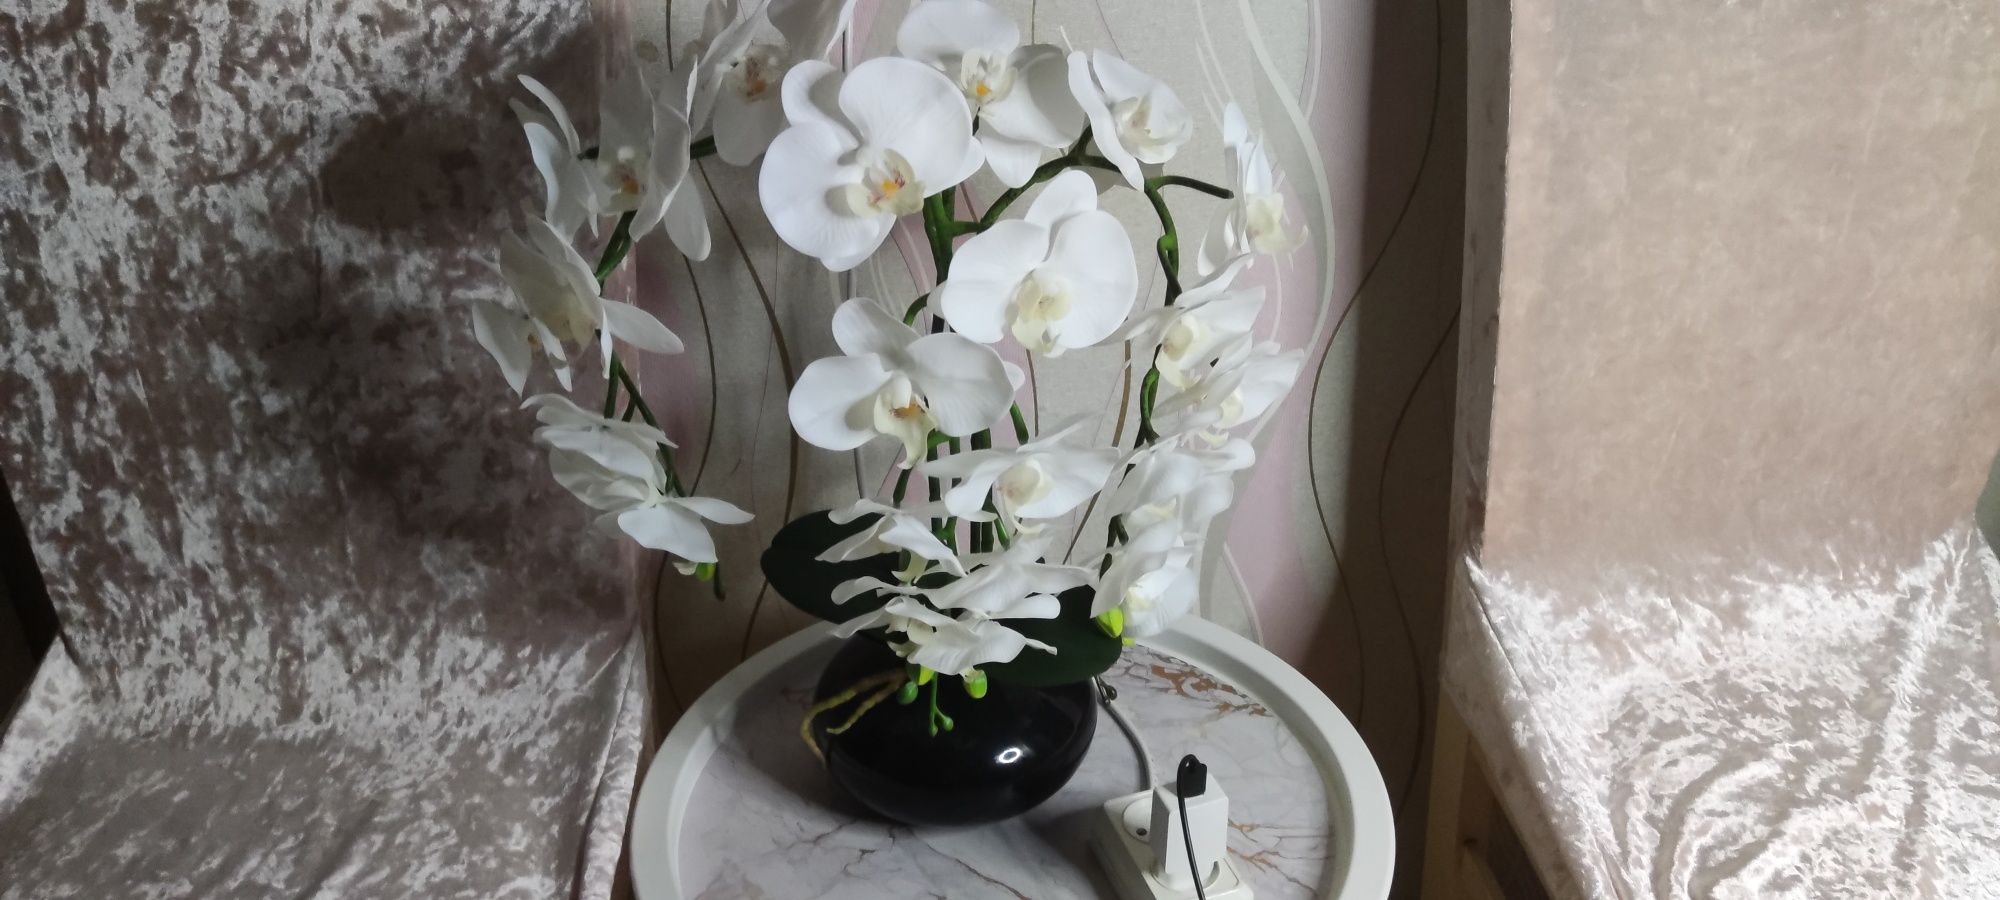 Искусственная орхидея белая реаличтичная